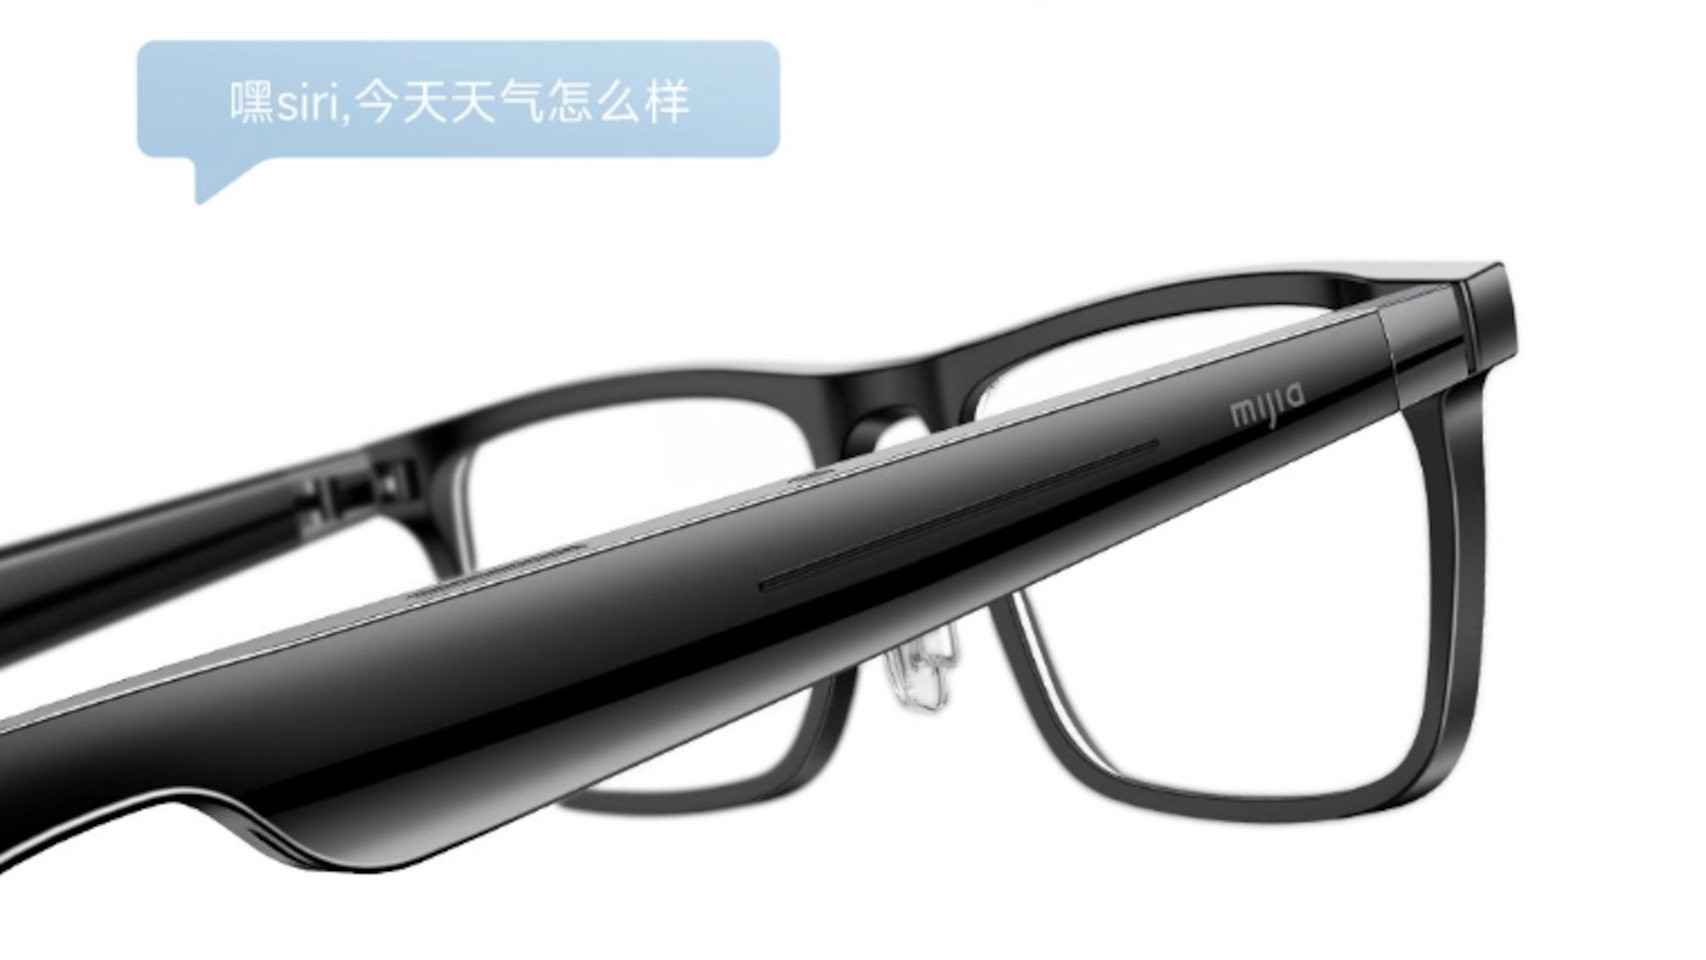 Las gafas de Xiaomi usarán asistentes de voz para muchas de sus funciones